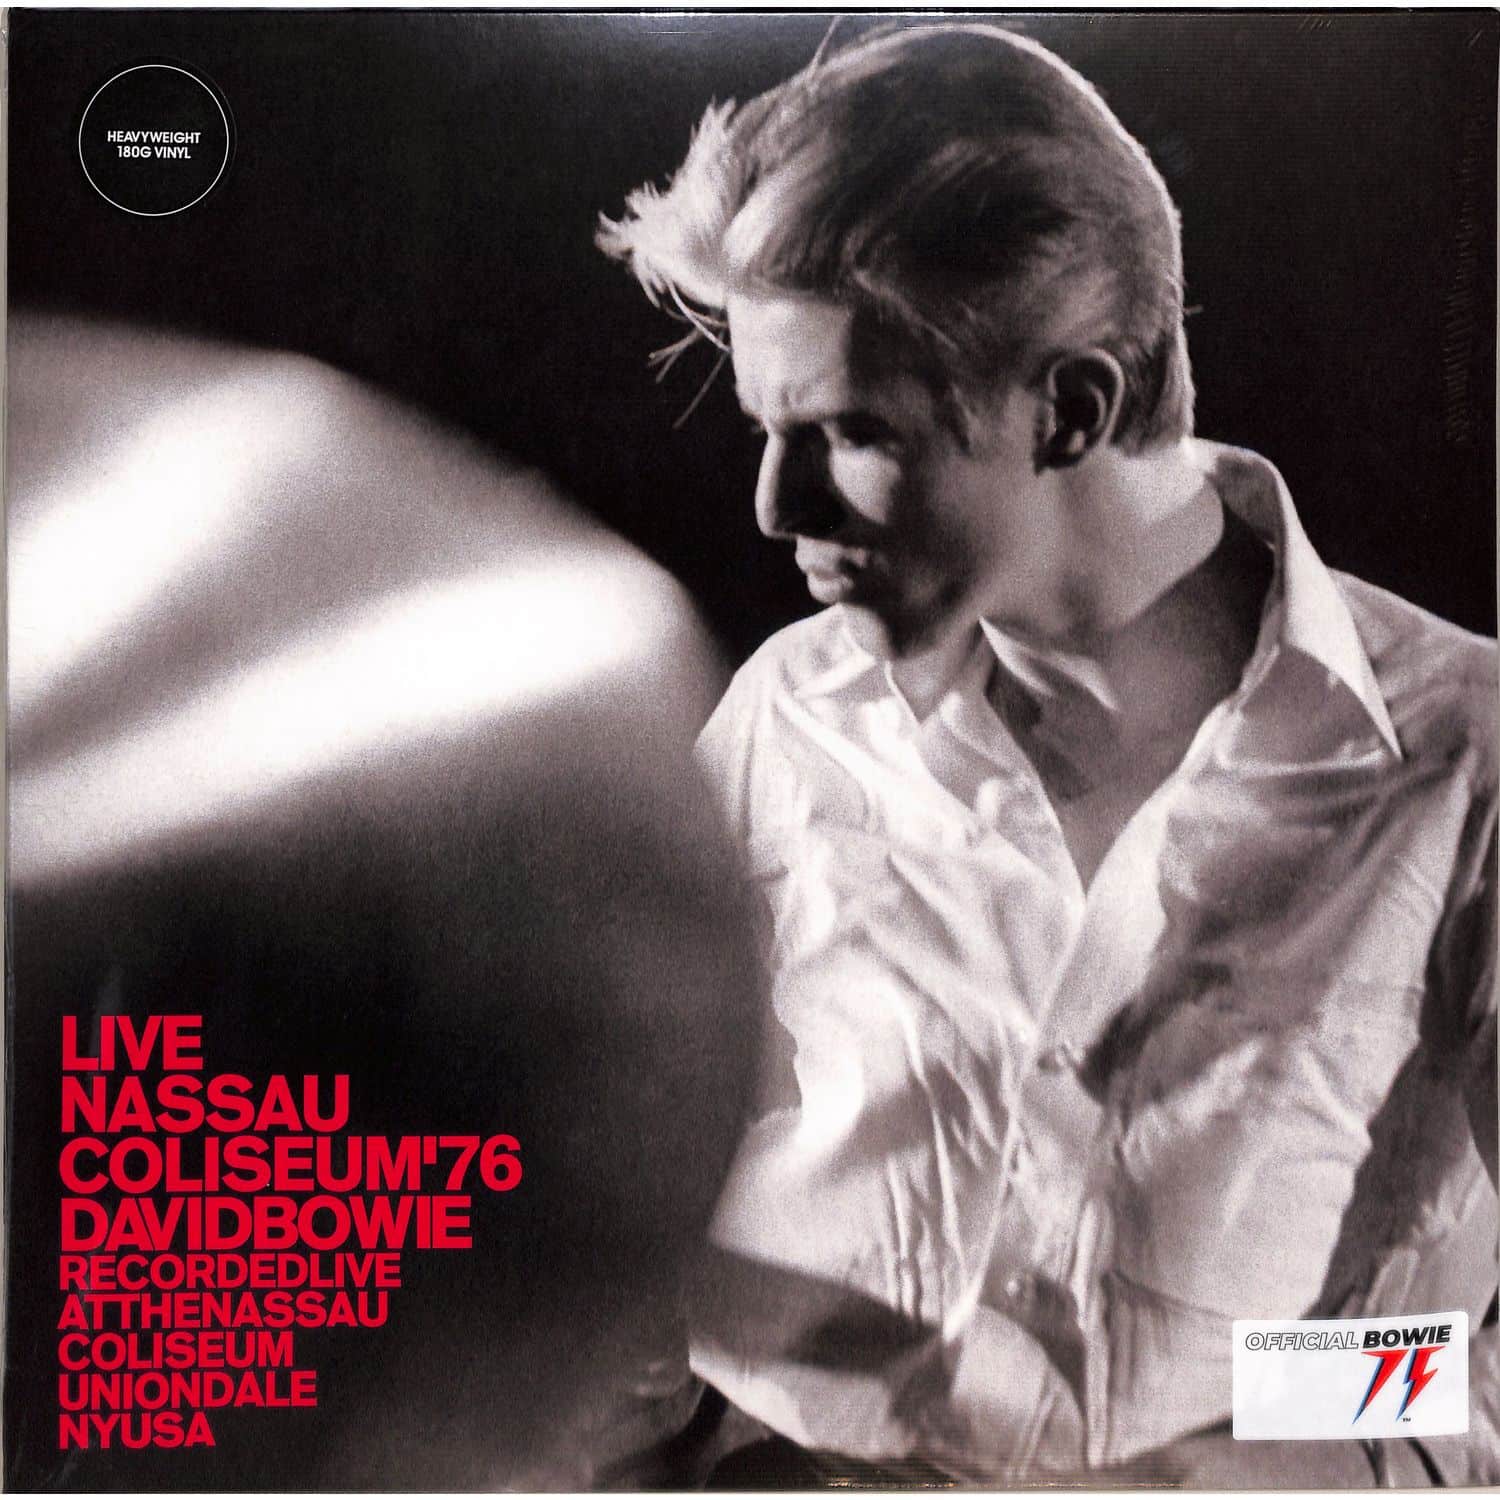 David Bowie - LIVE NASSAU COLISEUM 76 